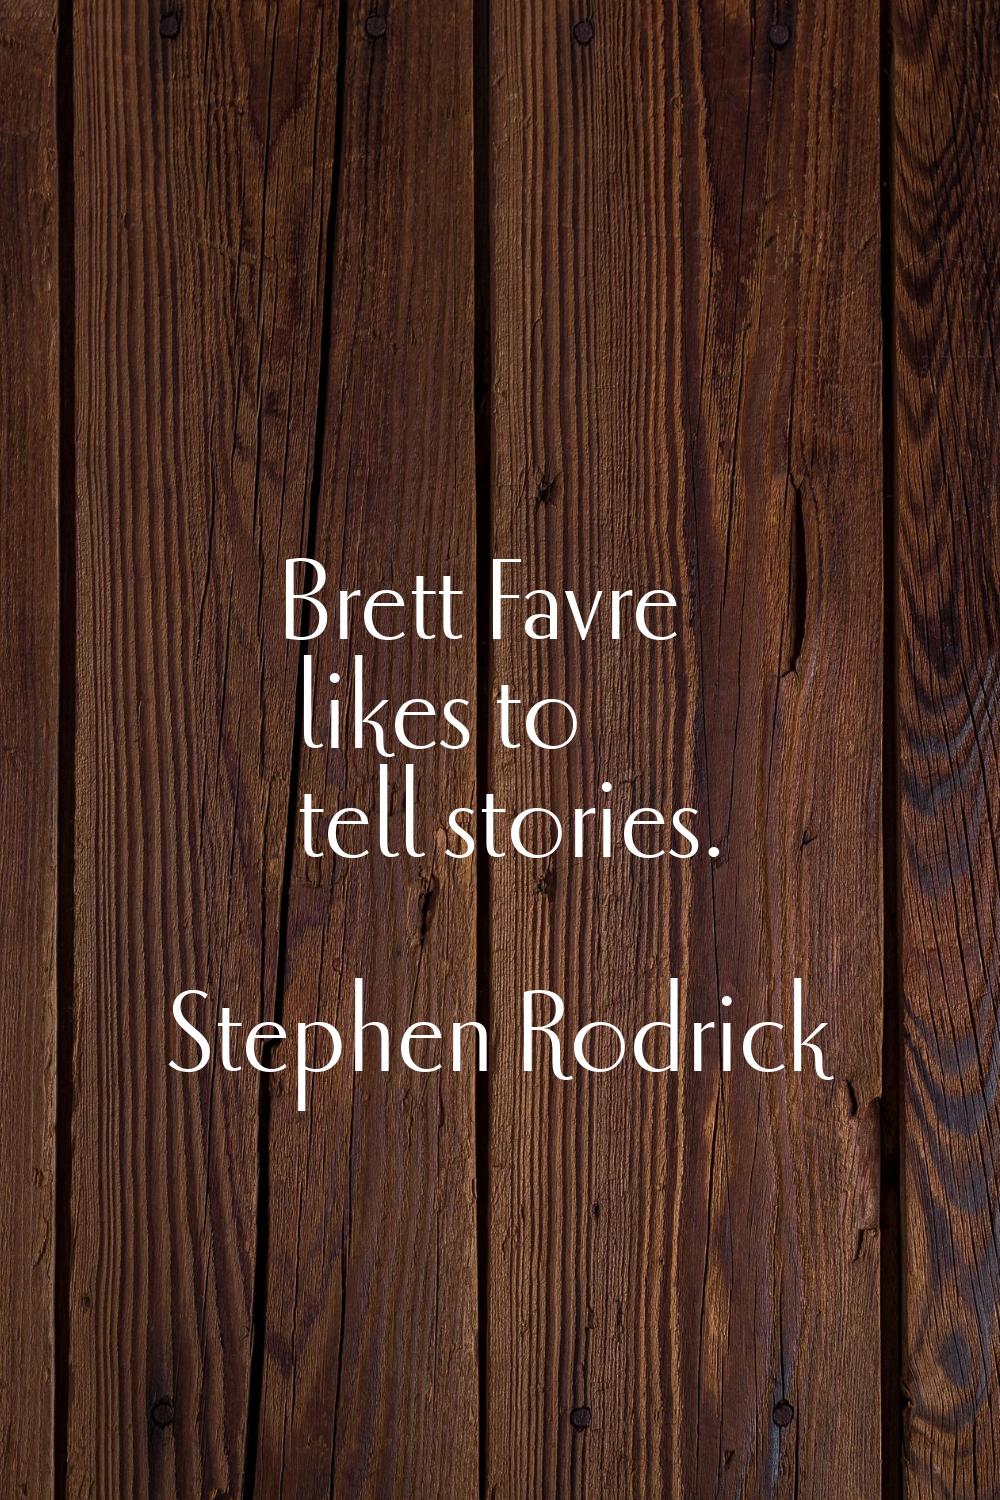 Brett Favre likes to tell stories.